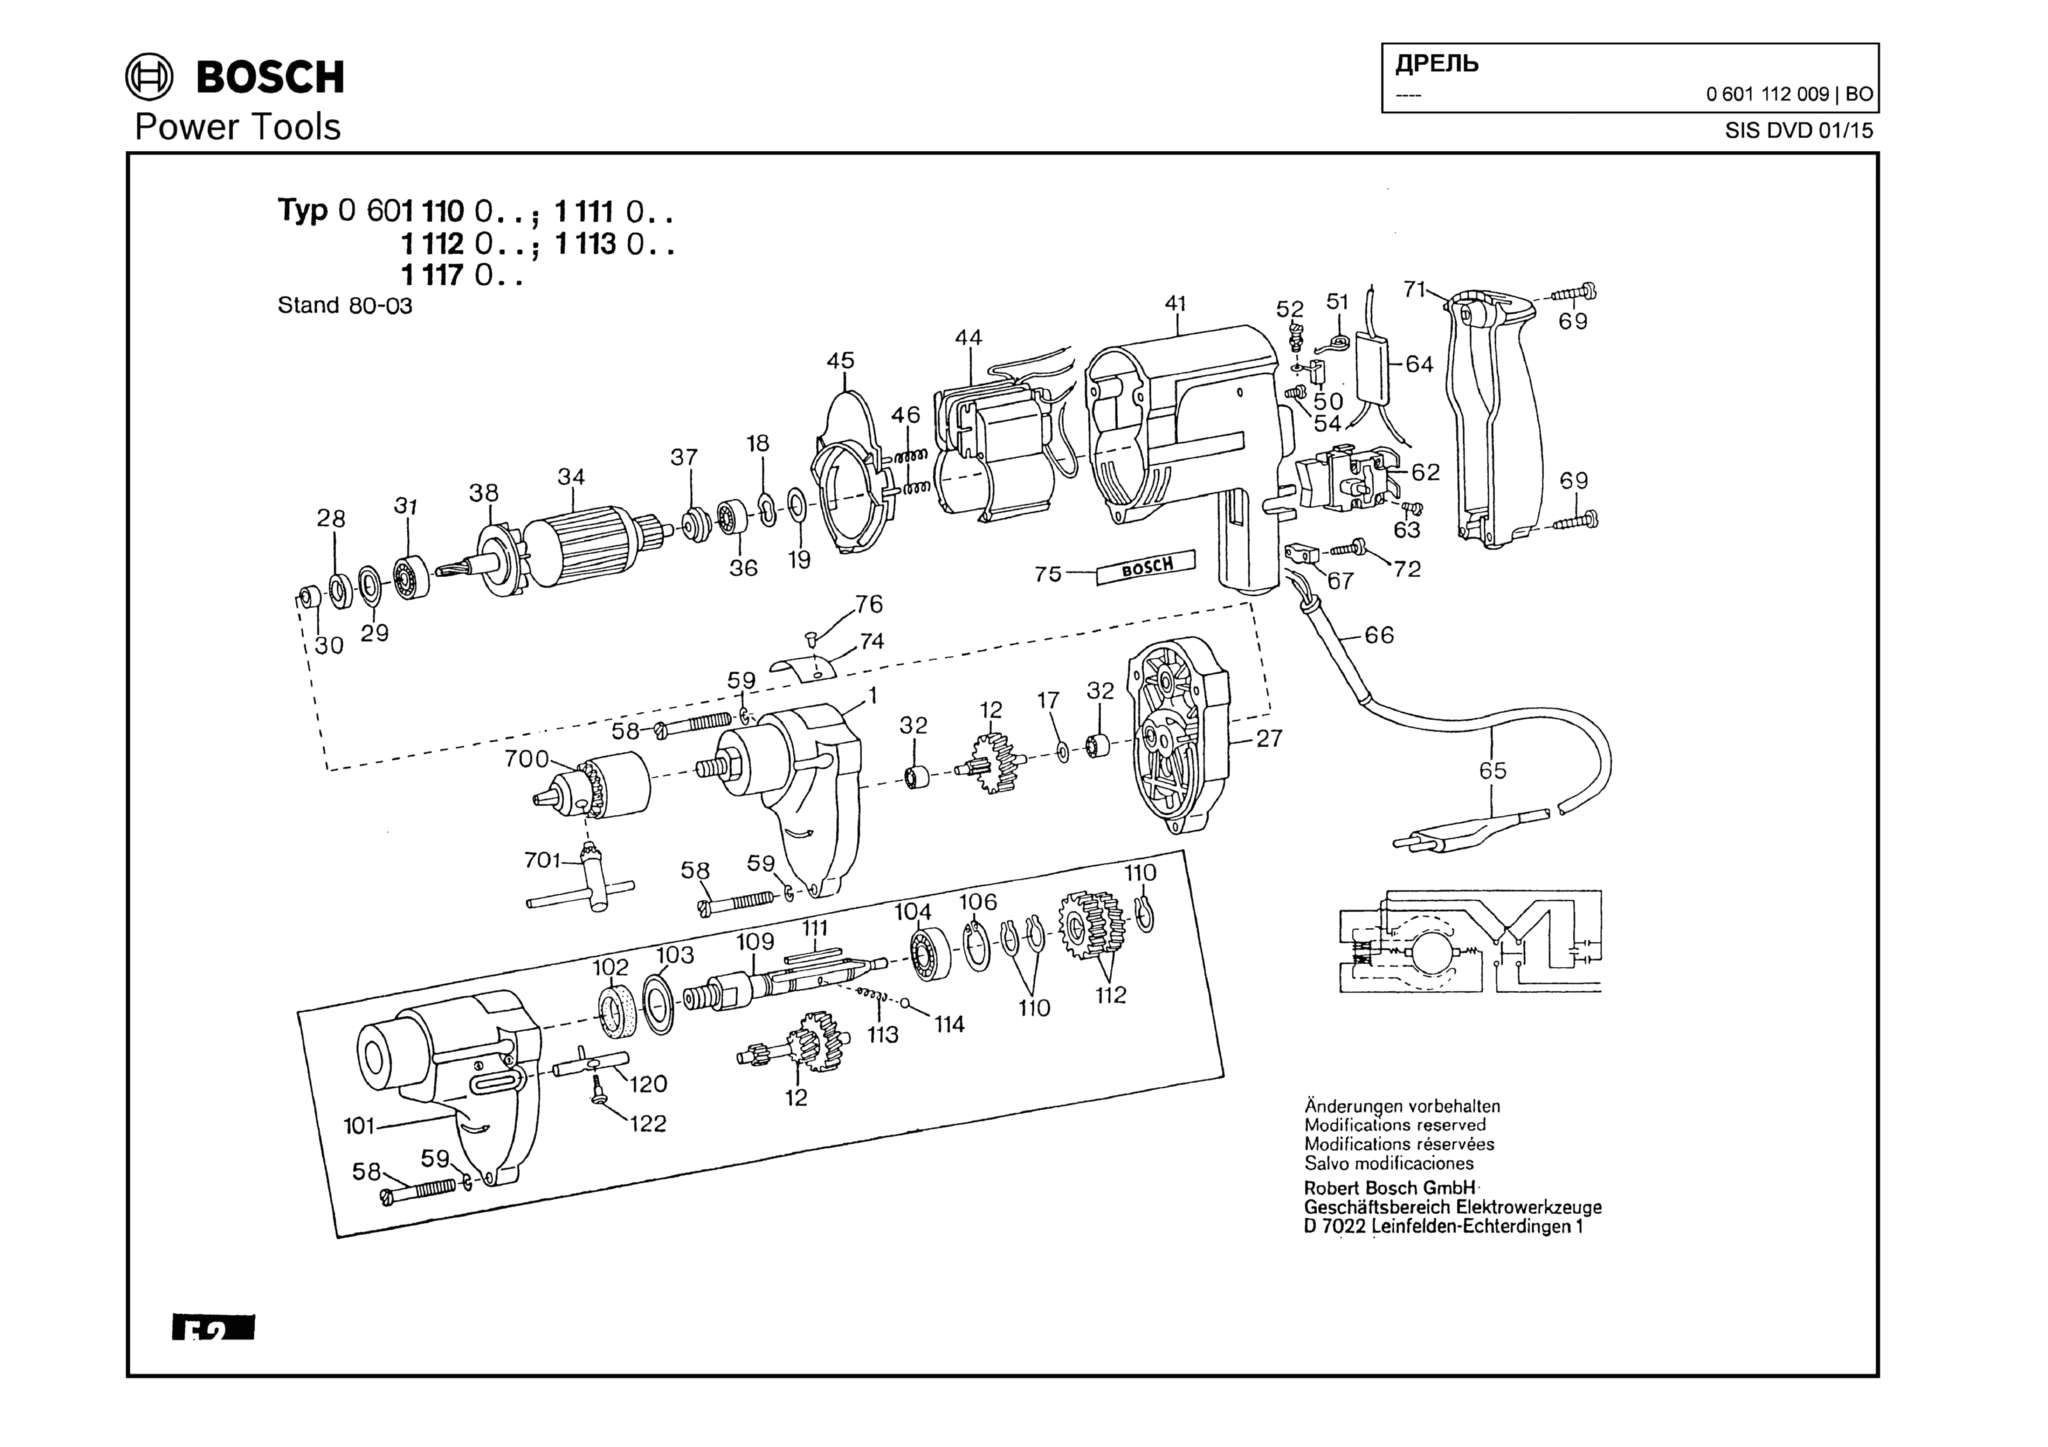 Запчасти, схема и деталировка Bosch (ТИП 0601112009)